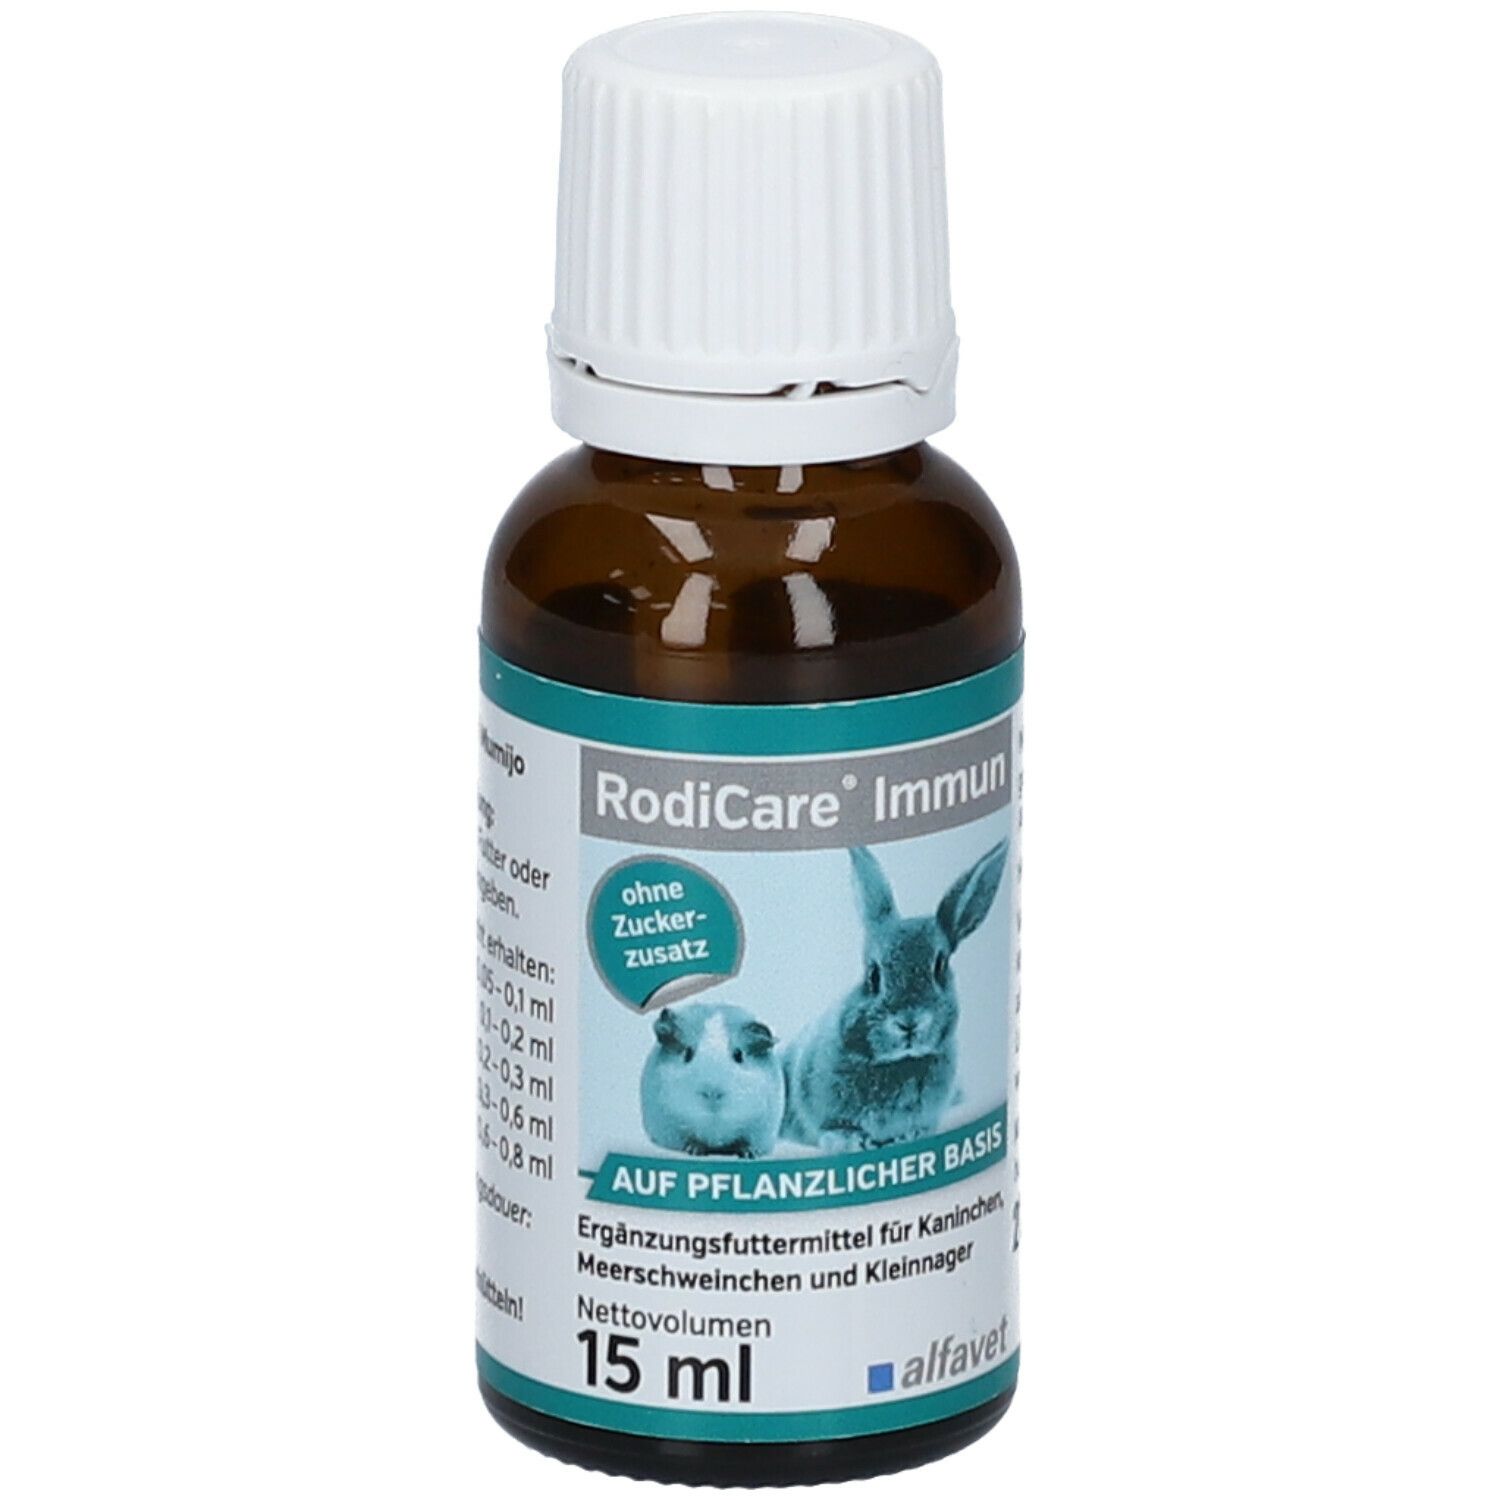 RodiCare® Immun für Kaninchen, Kleinnager und Meerschweinchen